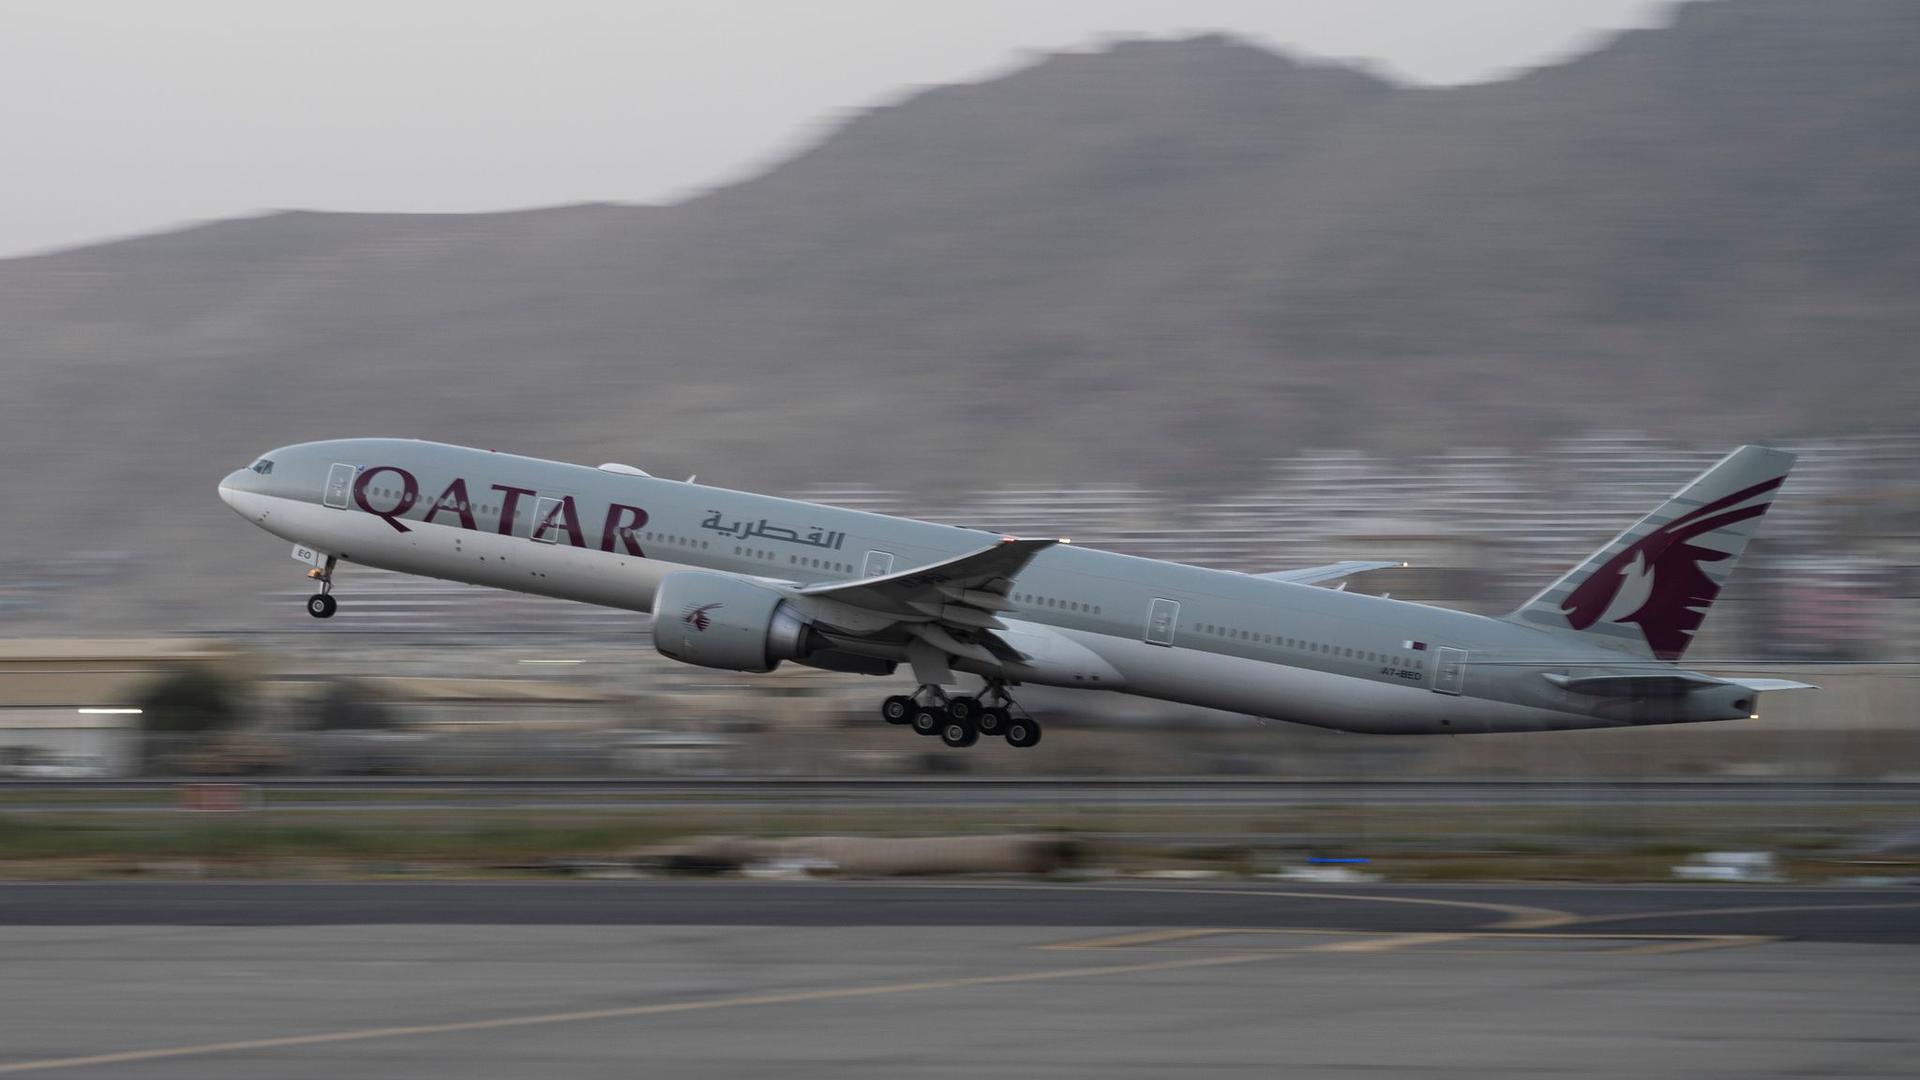 Ein Flugzeug der Fluggesellschaft Qatar Airways hebt am Flughafen in Kabul ab.